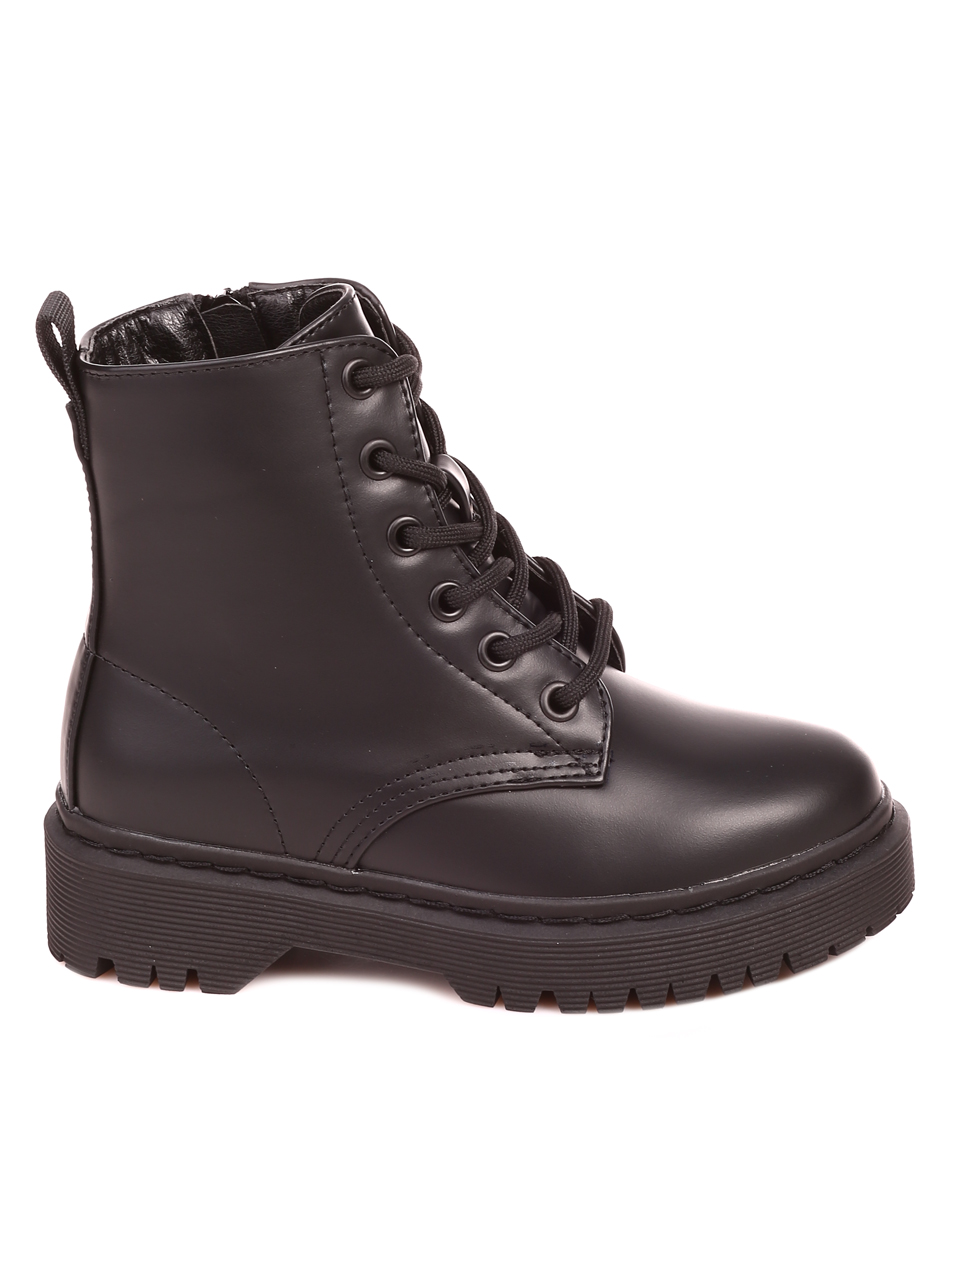 Ежедневни детски боти в черно 19R-22562 black | Paolobotticelli дамски  обувки, мъжки обувки, детски обувки, чанти - Обувки PaoloBotticelli